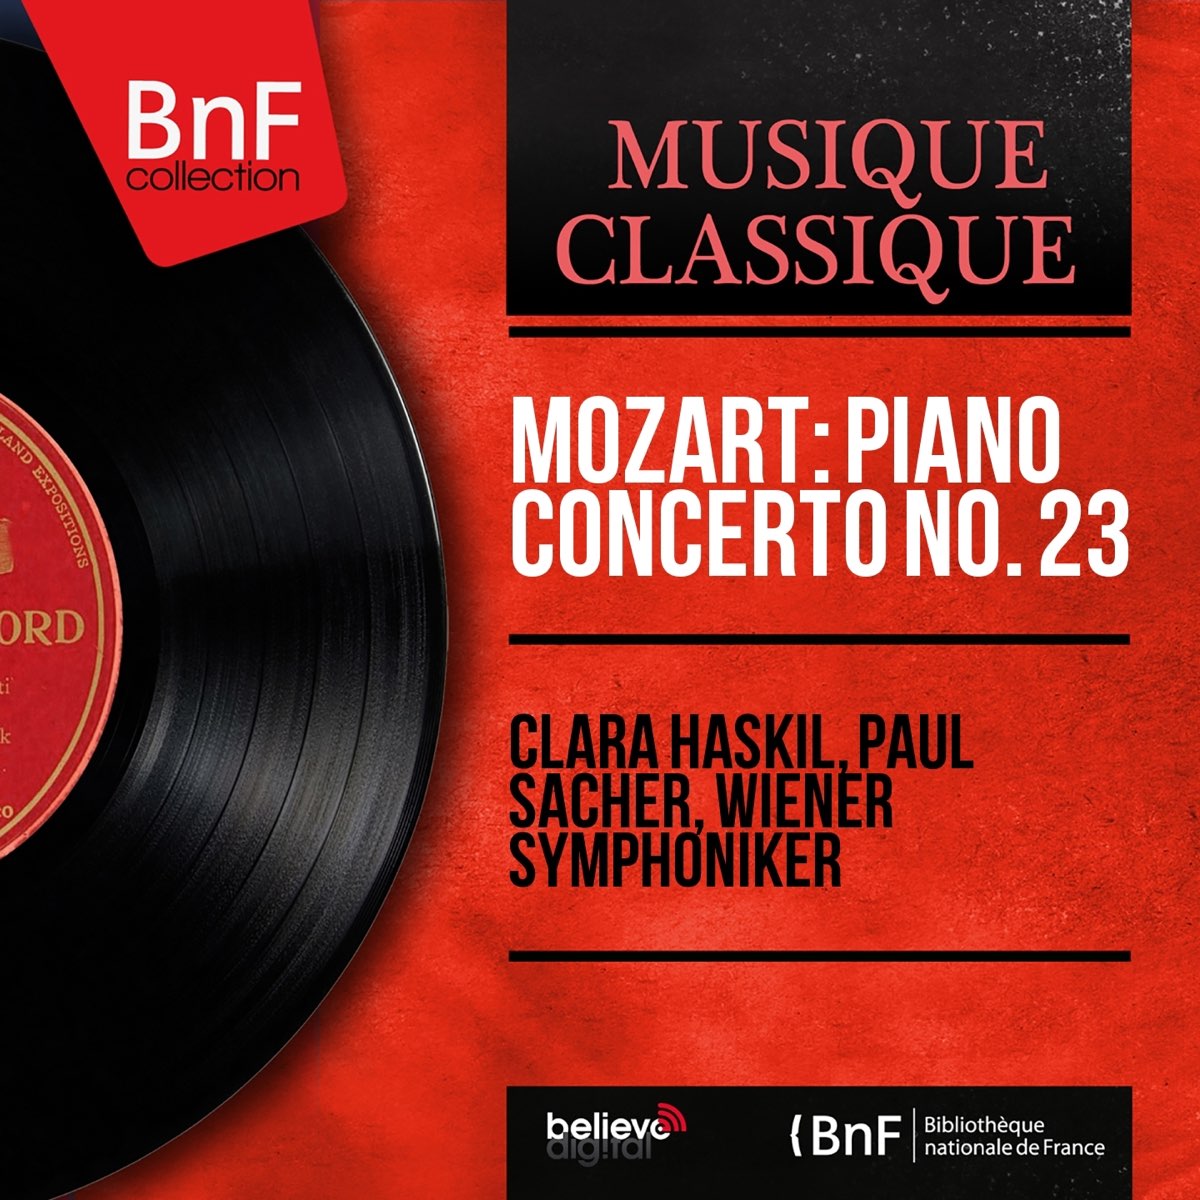 Mozart: Piano Concerto No. 23 (Mono Version) - EP par Clara Haskil, Paul  Sacher & Orchestre Symphonique de Vienne sur Apple Music